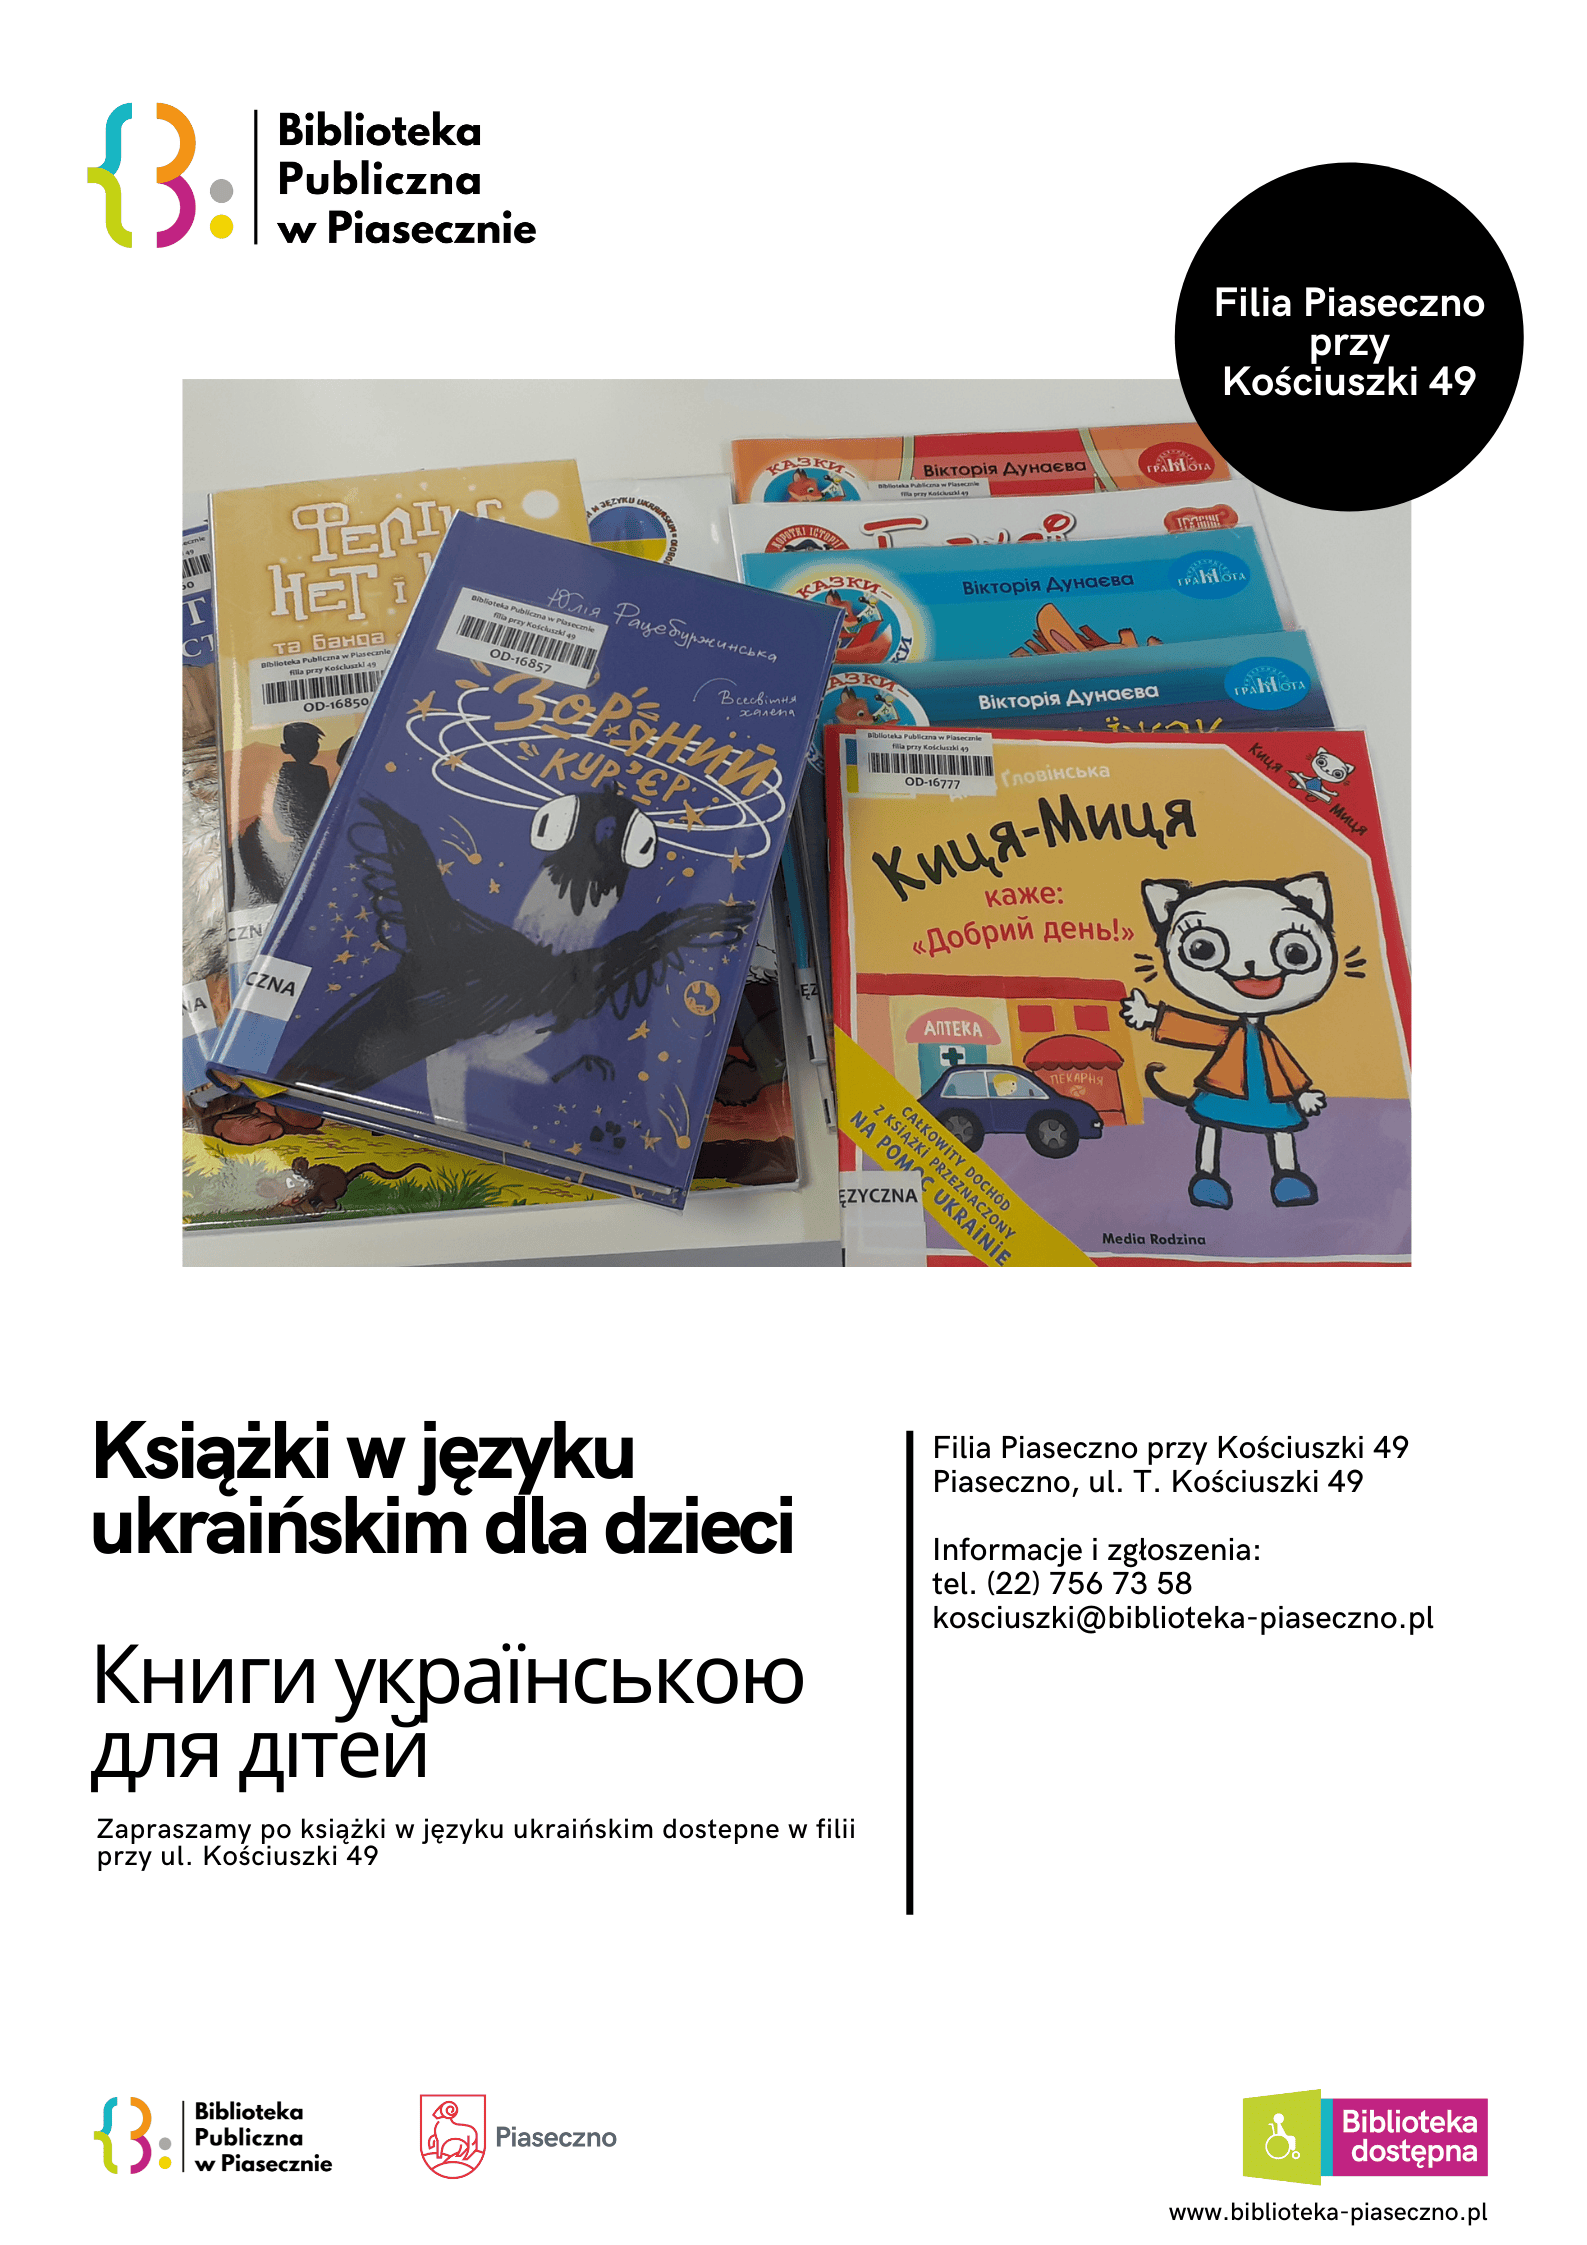 Książki w języku ukraińskim dla dzieci w bibliotece